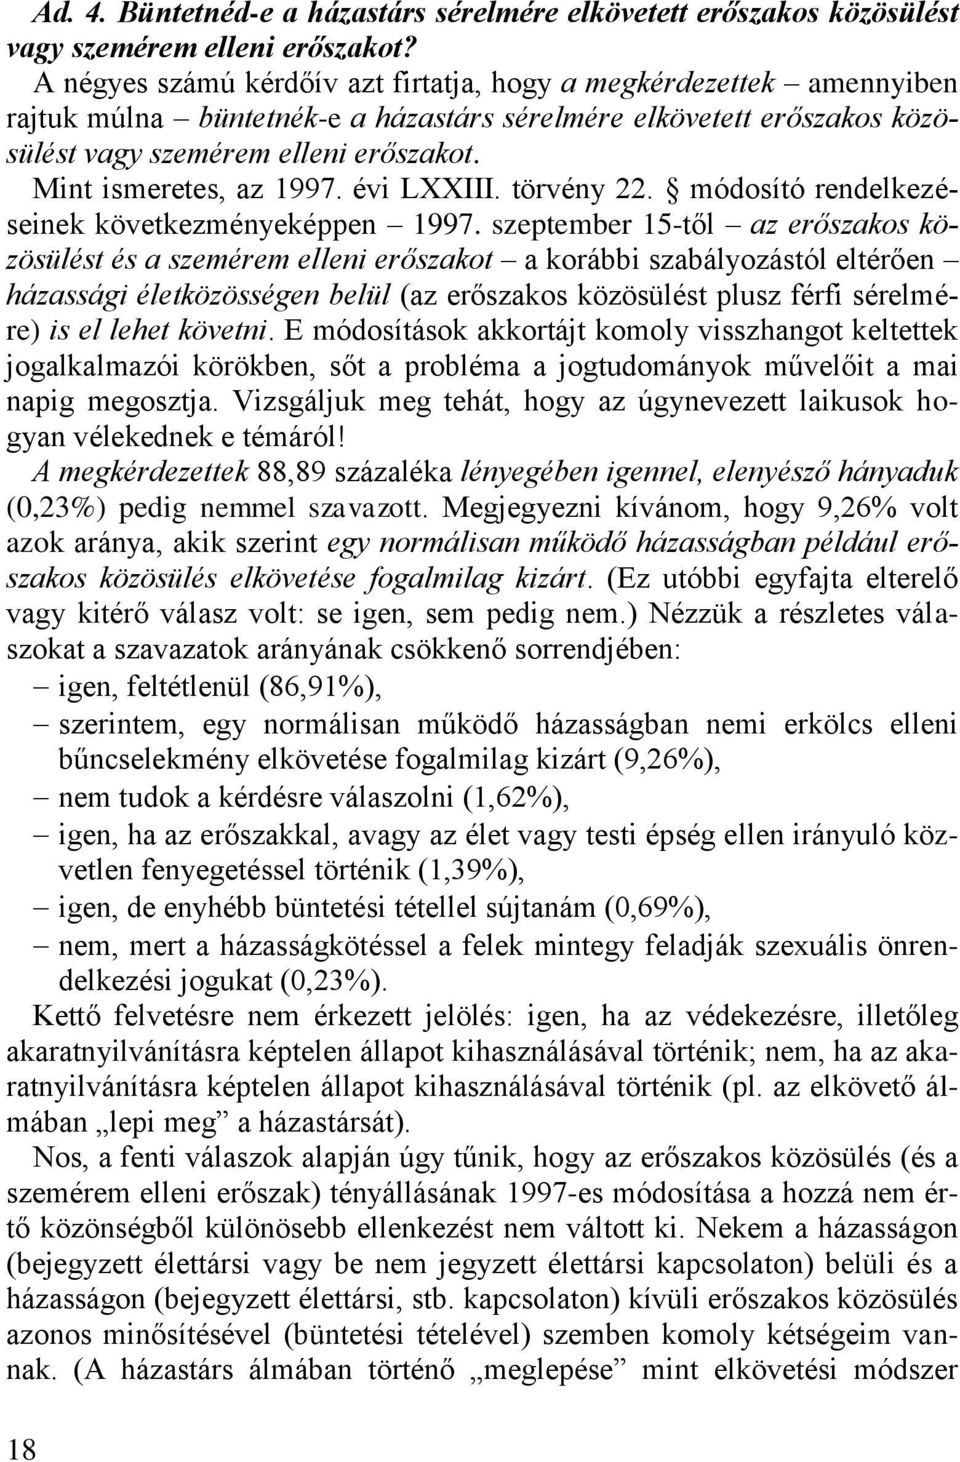 Dr. Kovács Gyula 1 AZ ERŐSZAKOS KÖZÖSÜLÉS A SZÁMOK TÜKRÉBEN 2 - PDF  Ingyenes letöltés